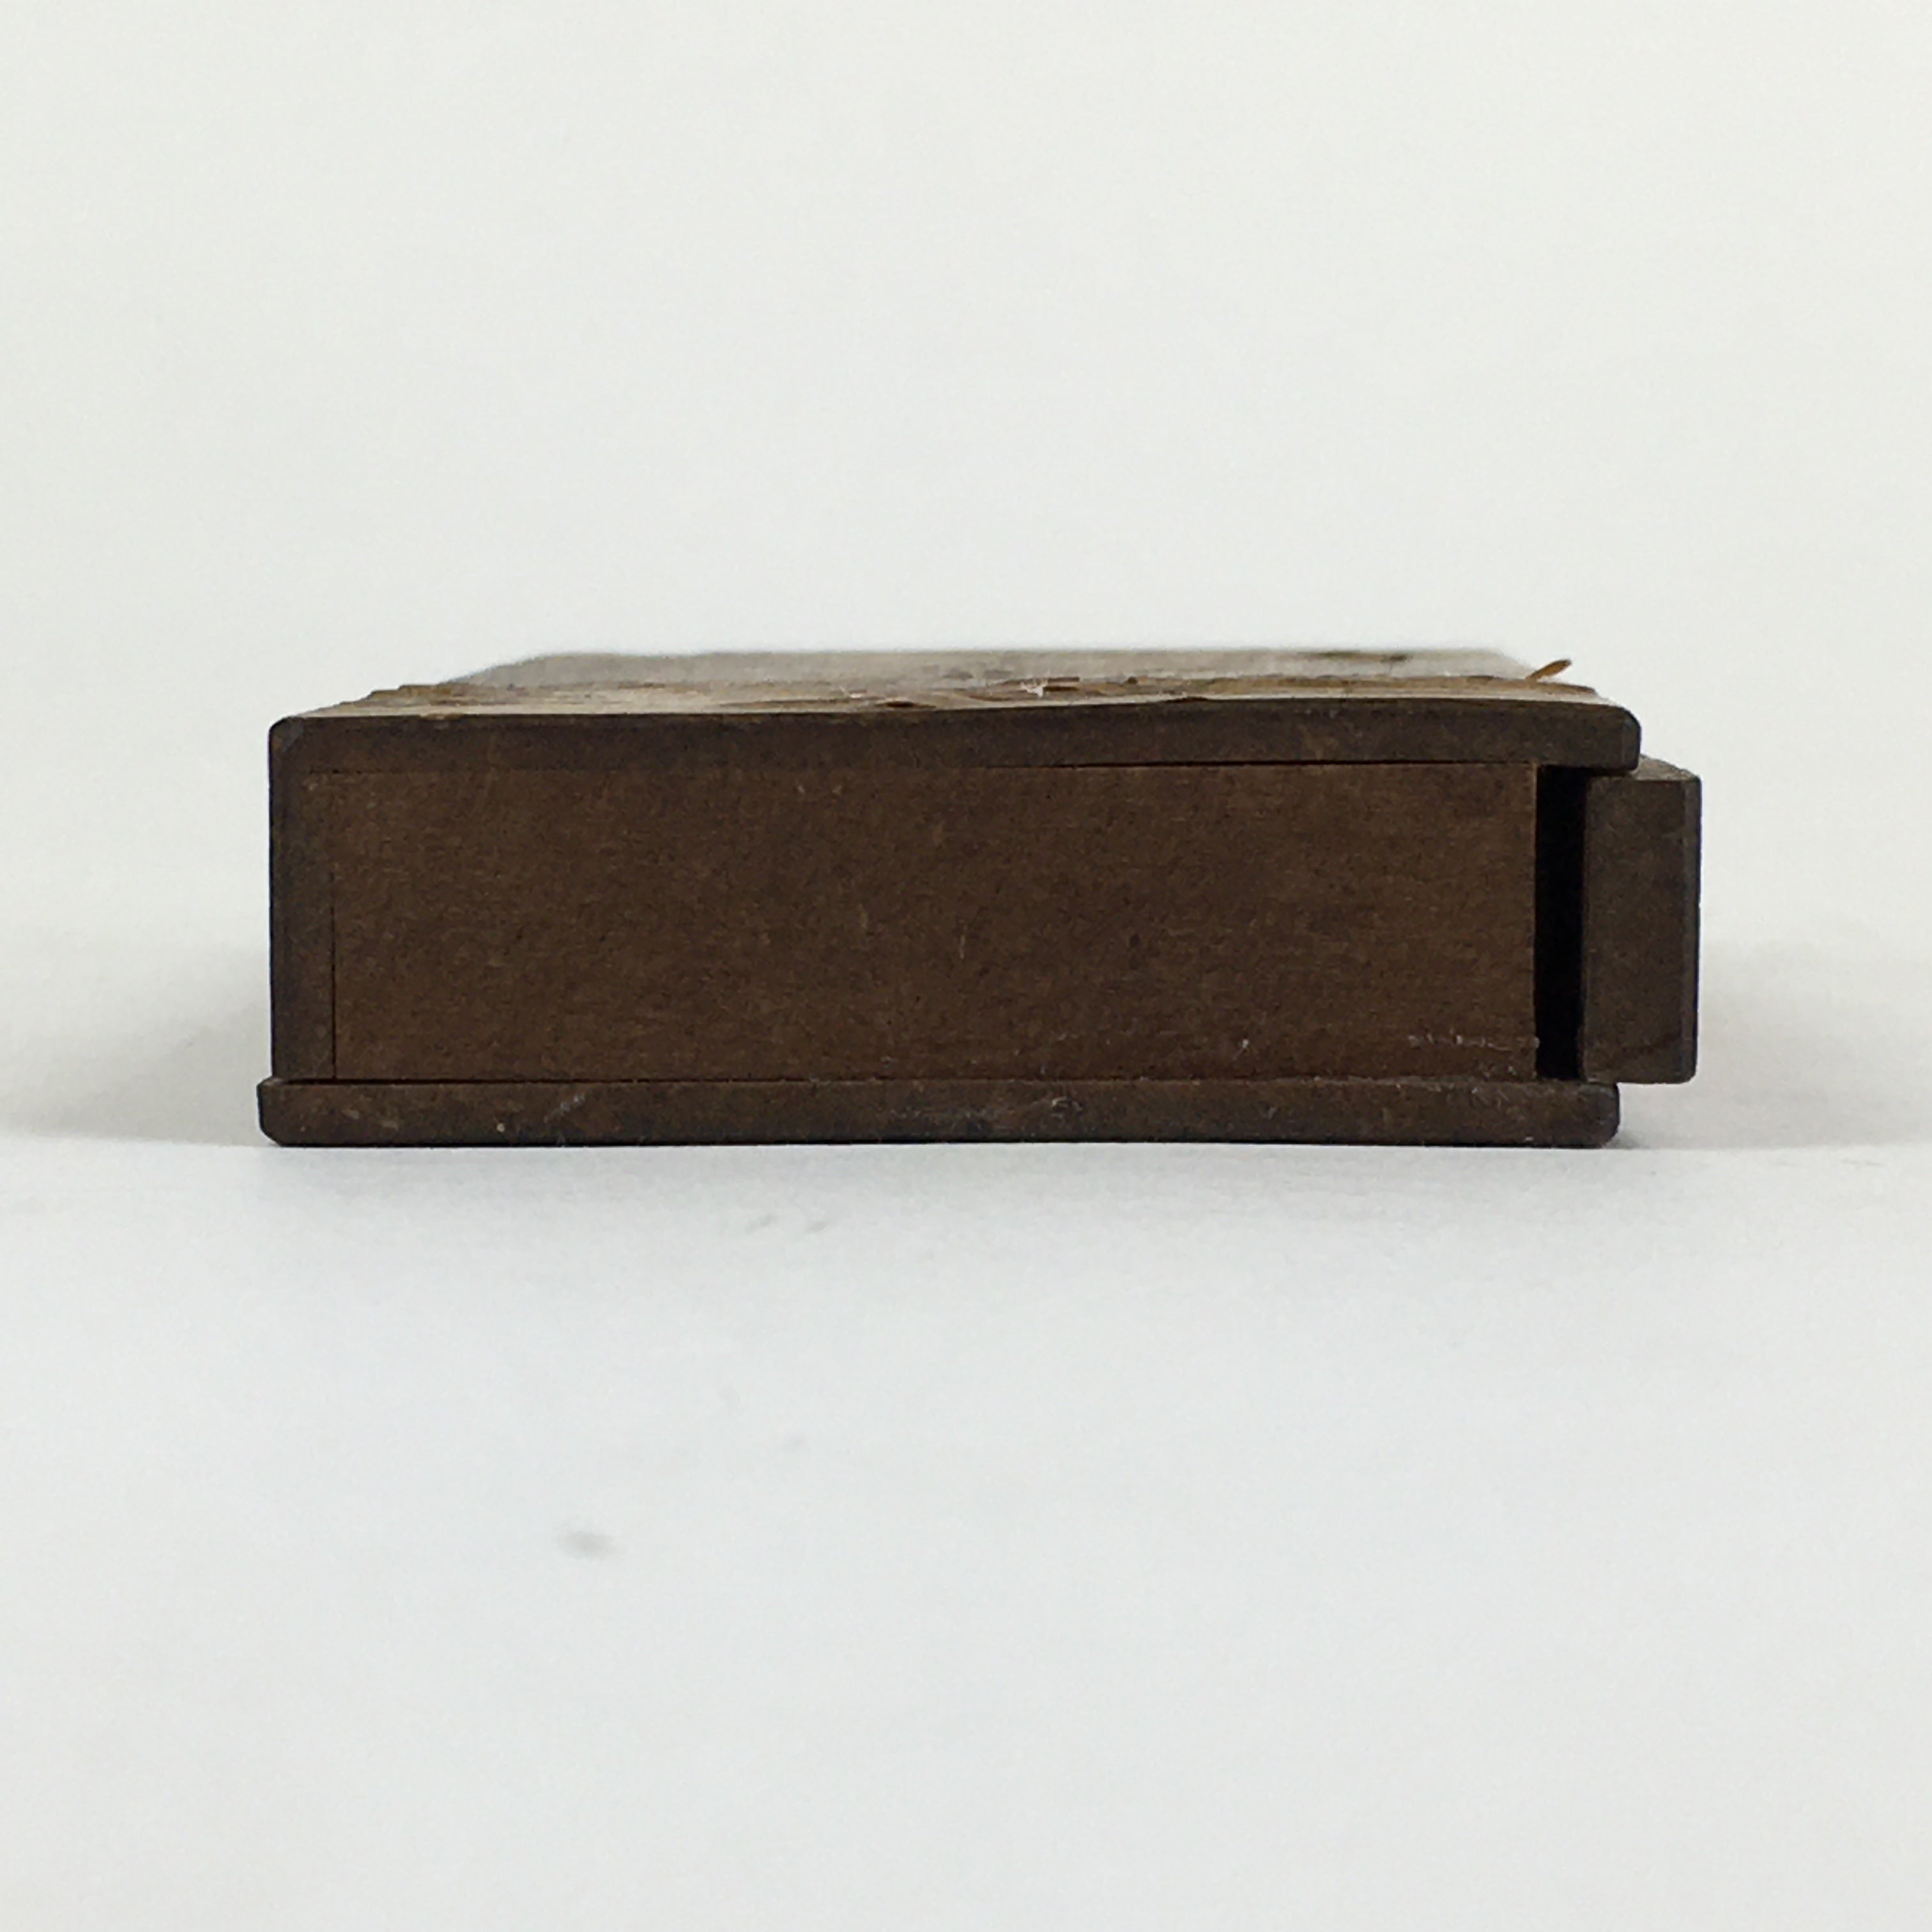 Japanese Wooden Match Box Vtg Handmade Woodworking Brown JK352